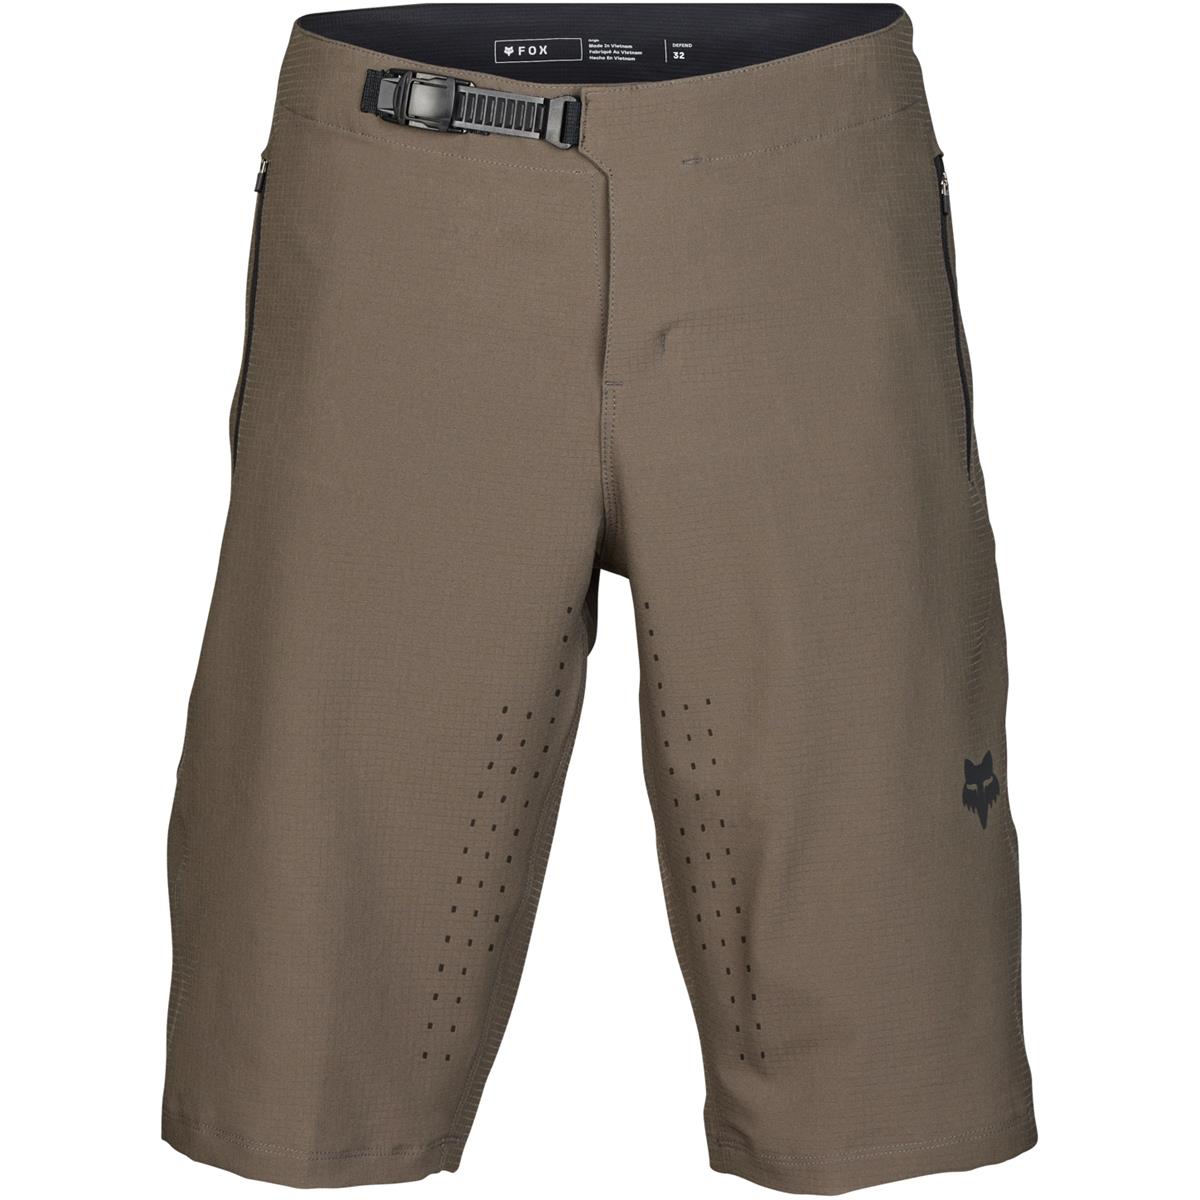 Fox MTB-Shorts Defend Dirt